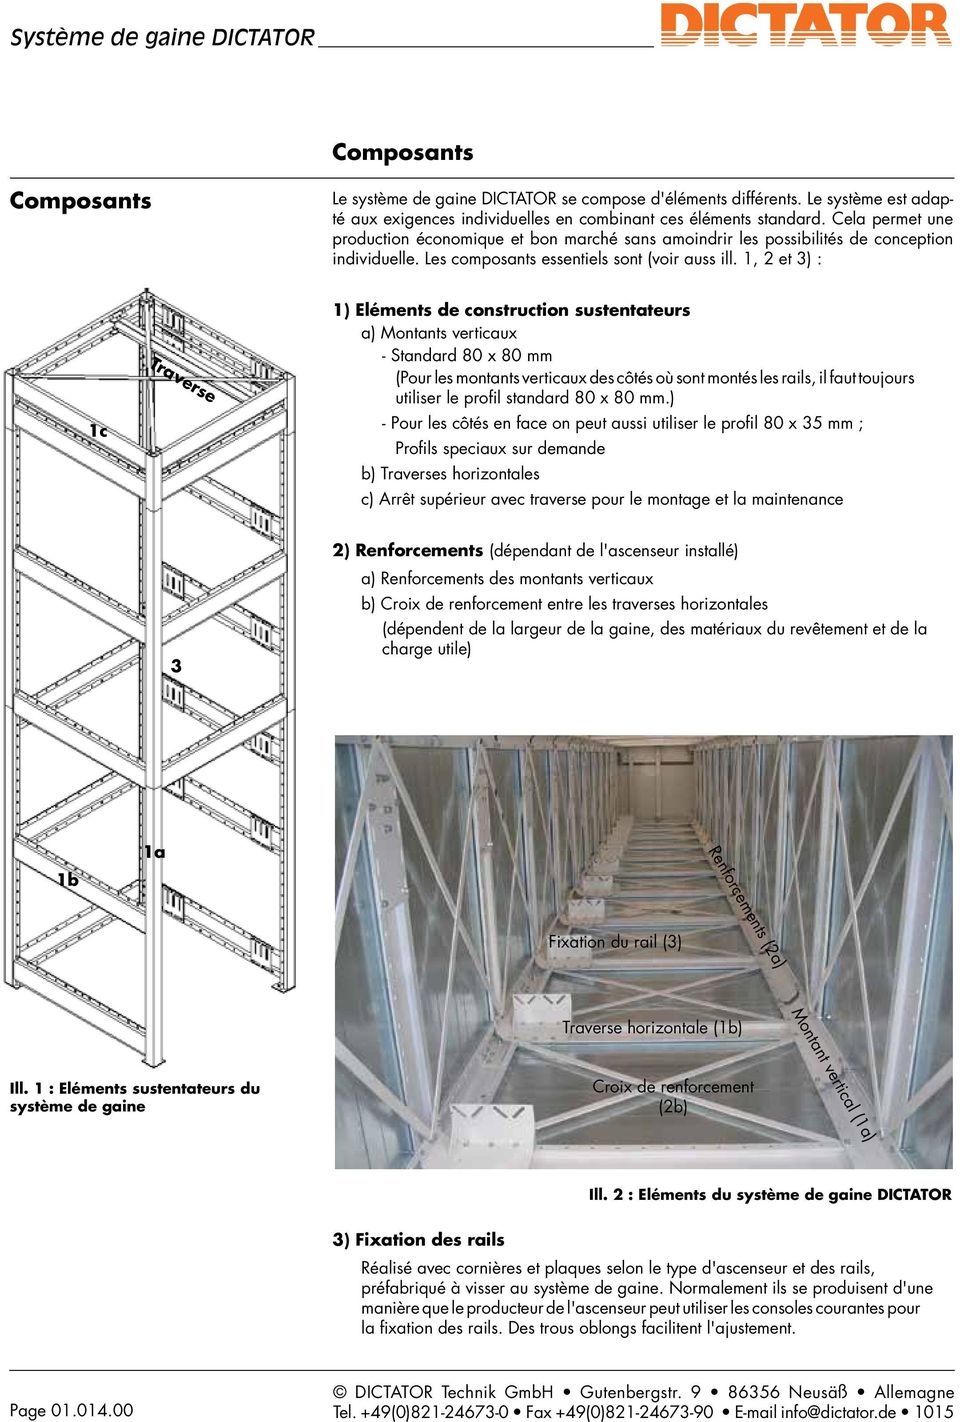 1, 2 et 3) : 1c Traverse 1) Eléments de construction sustentateurs a) Montants verticaux - Standard 80 x 80 mm (Pour les montants verticaux des côtés où sont montés les rails, il faut toujours